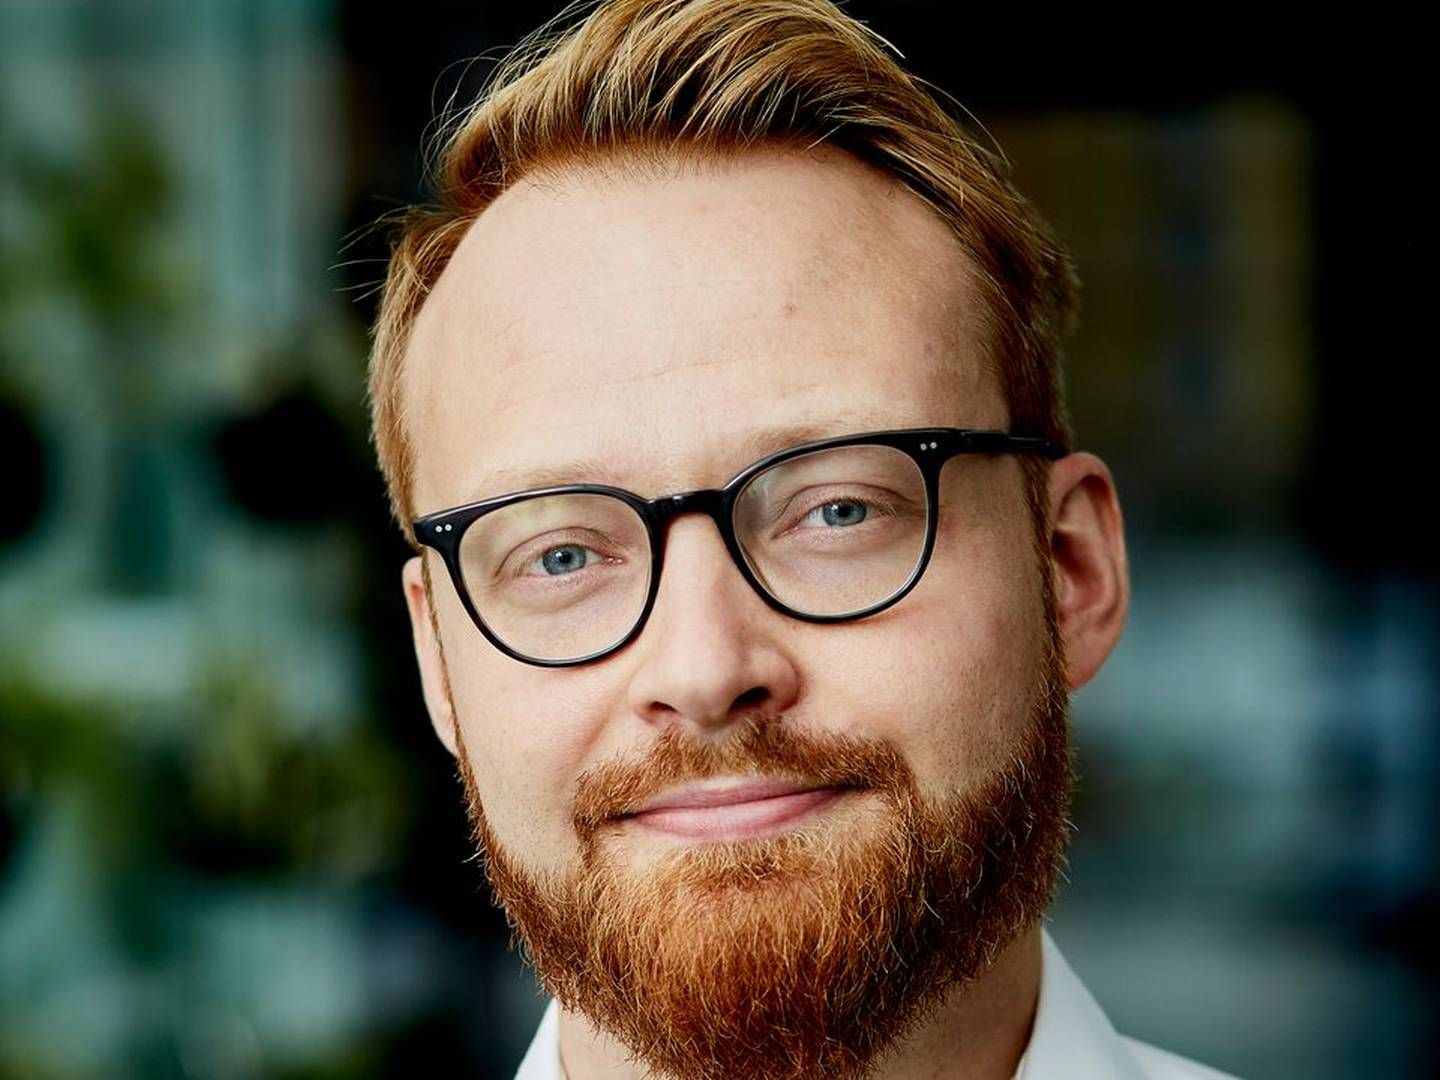 Asbjørn Lindsø skal nu være kommunikations- og pressechef hos SMVdanmark efter at være stoppet hos styrelsen i december. | Foto: PR